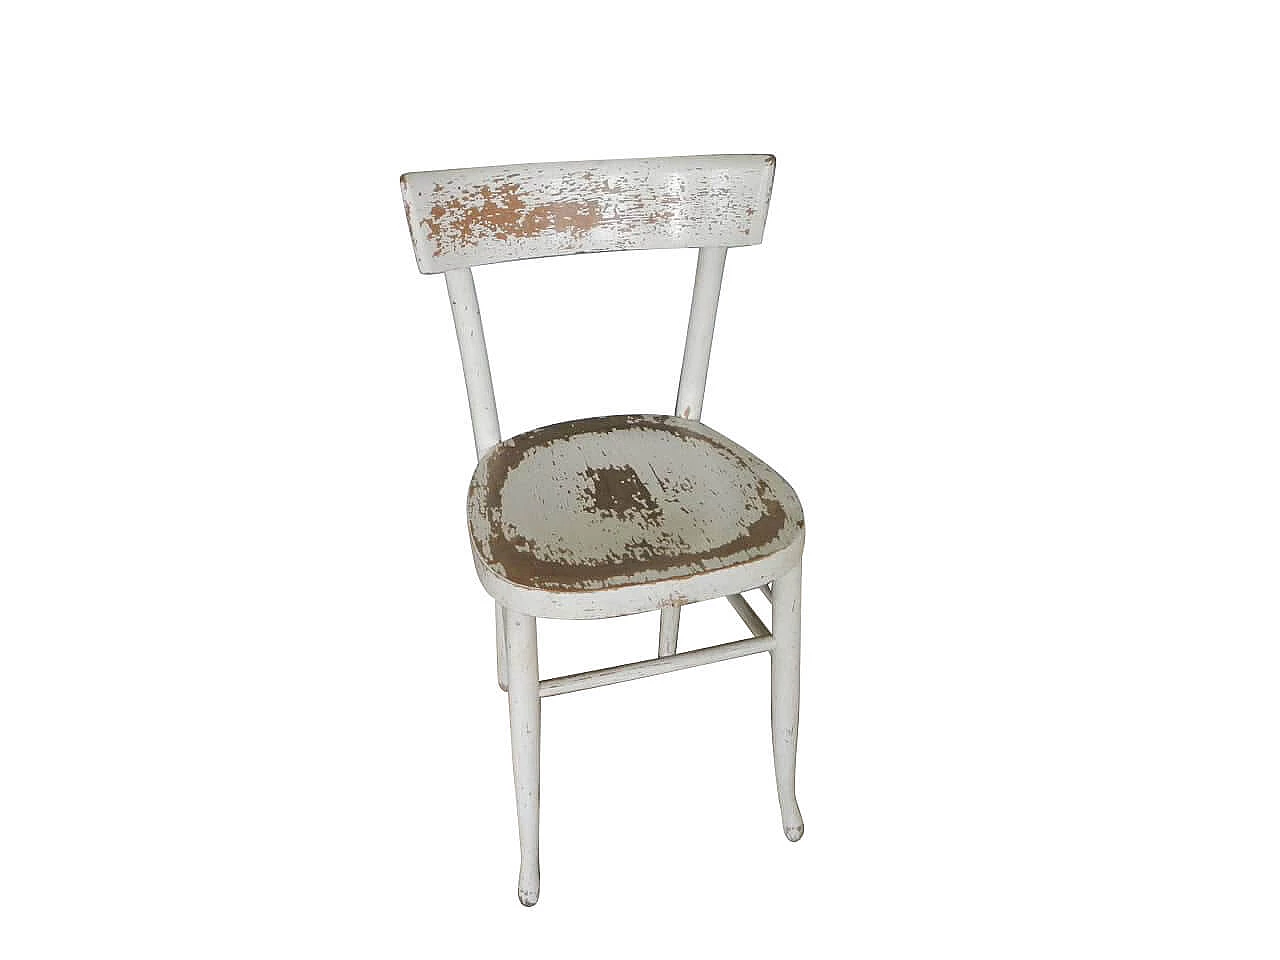 Beech chair, 1950s 1062887